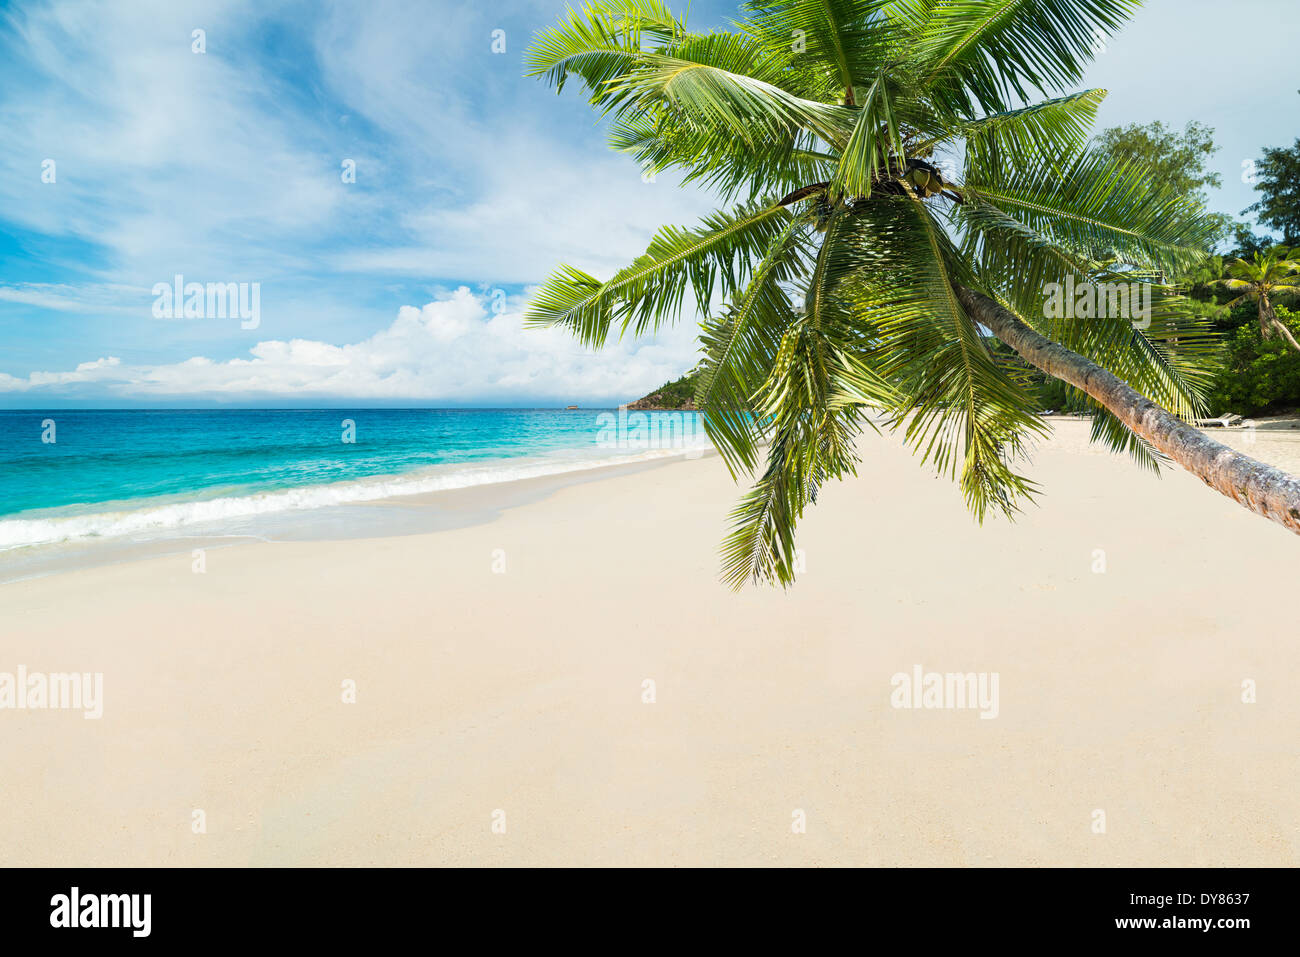 Plage tropicale avec palmiers et mer turquoise Banque D'Images